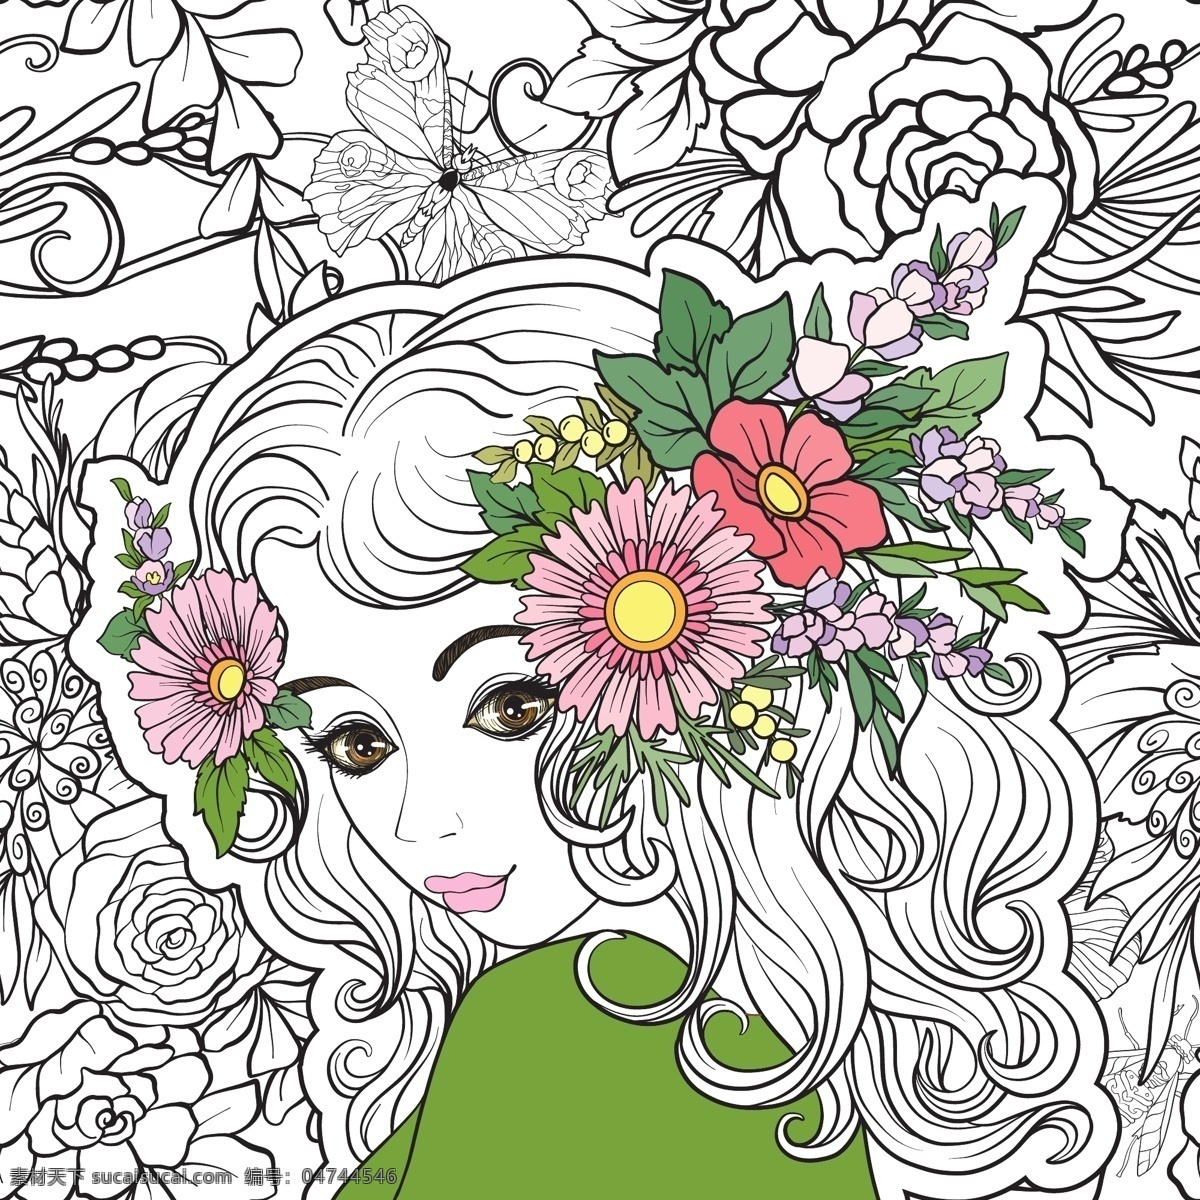 手绘 少女 插画 矢量 动漫 红色 花朵 卡通 绿色 免扣素材 素材合集 紫色